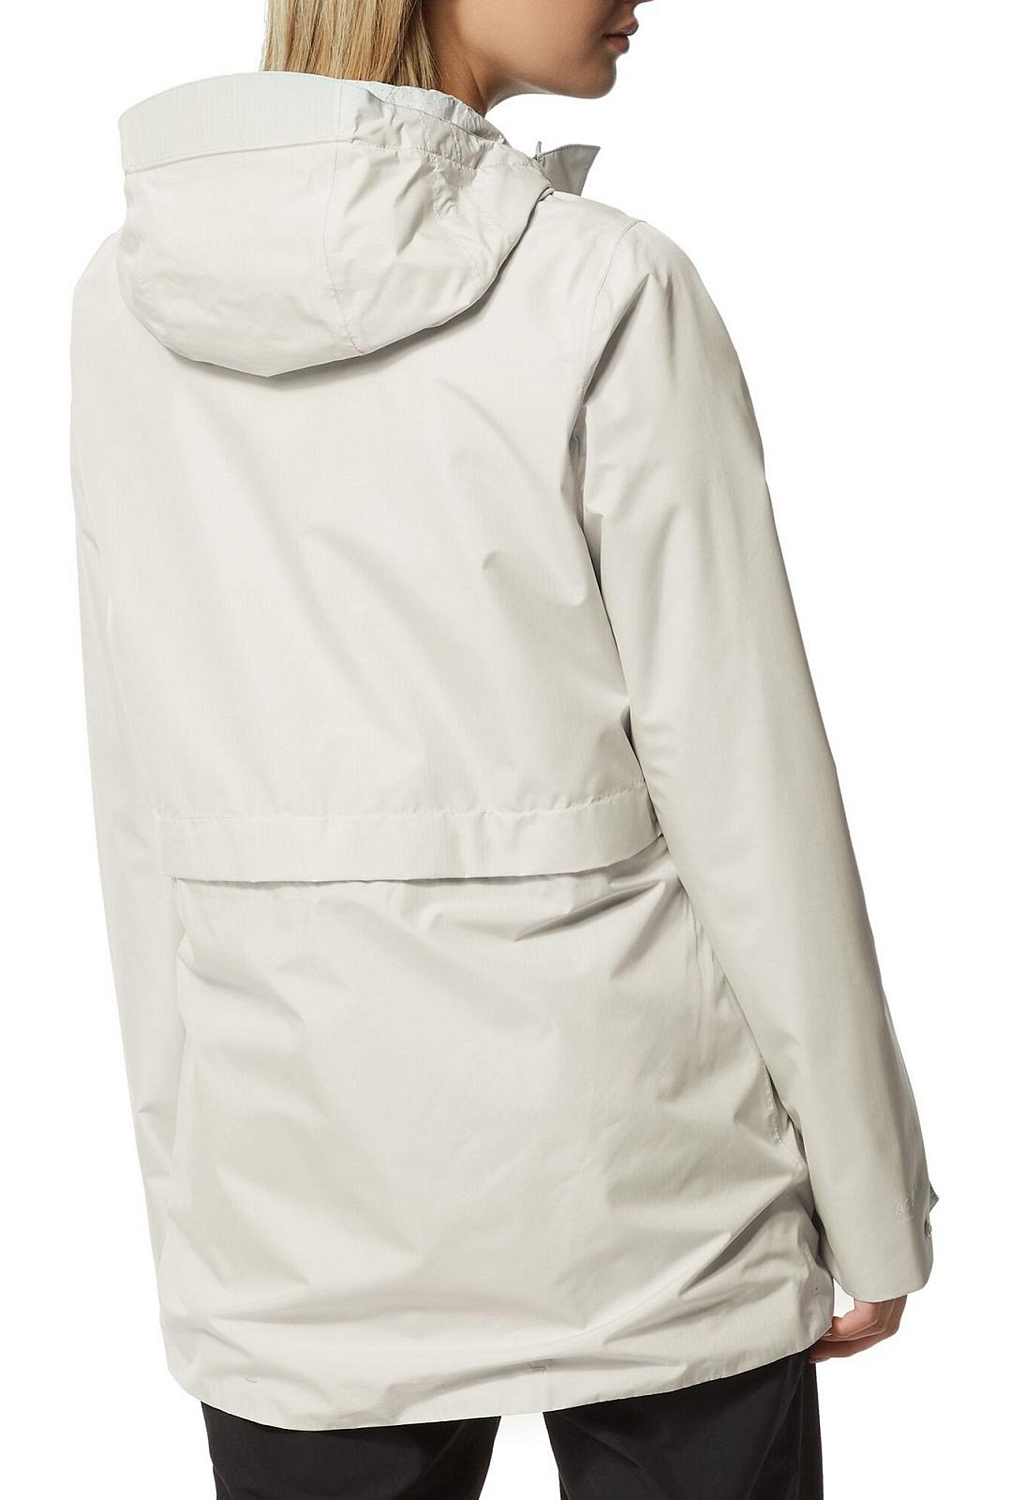 Куртка для активного отдыха Craghoppers Minori Dove Grey